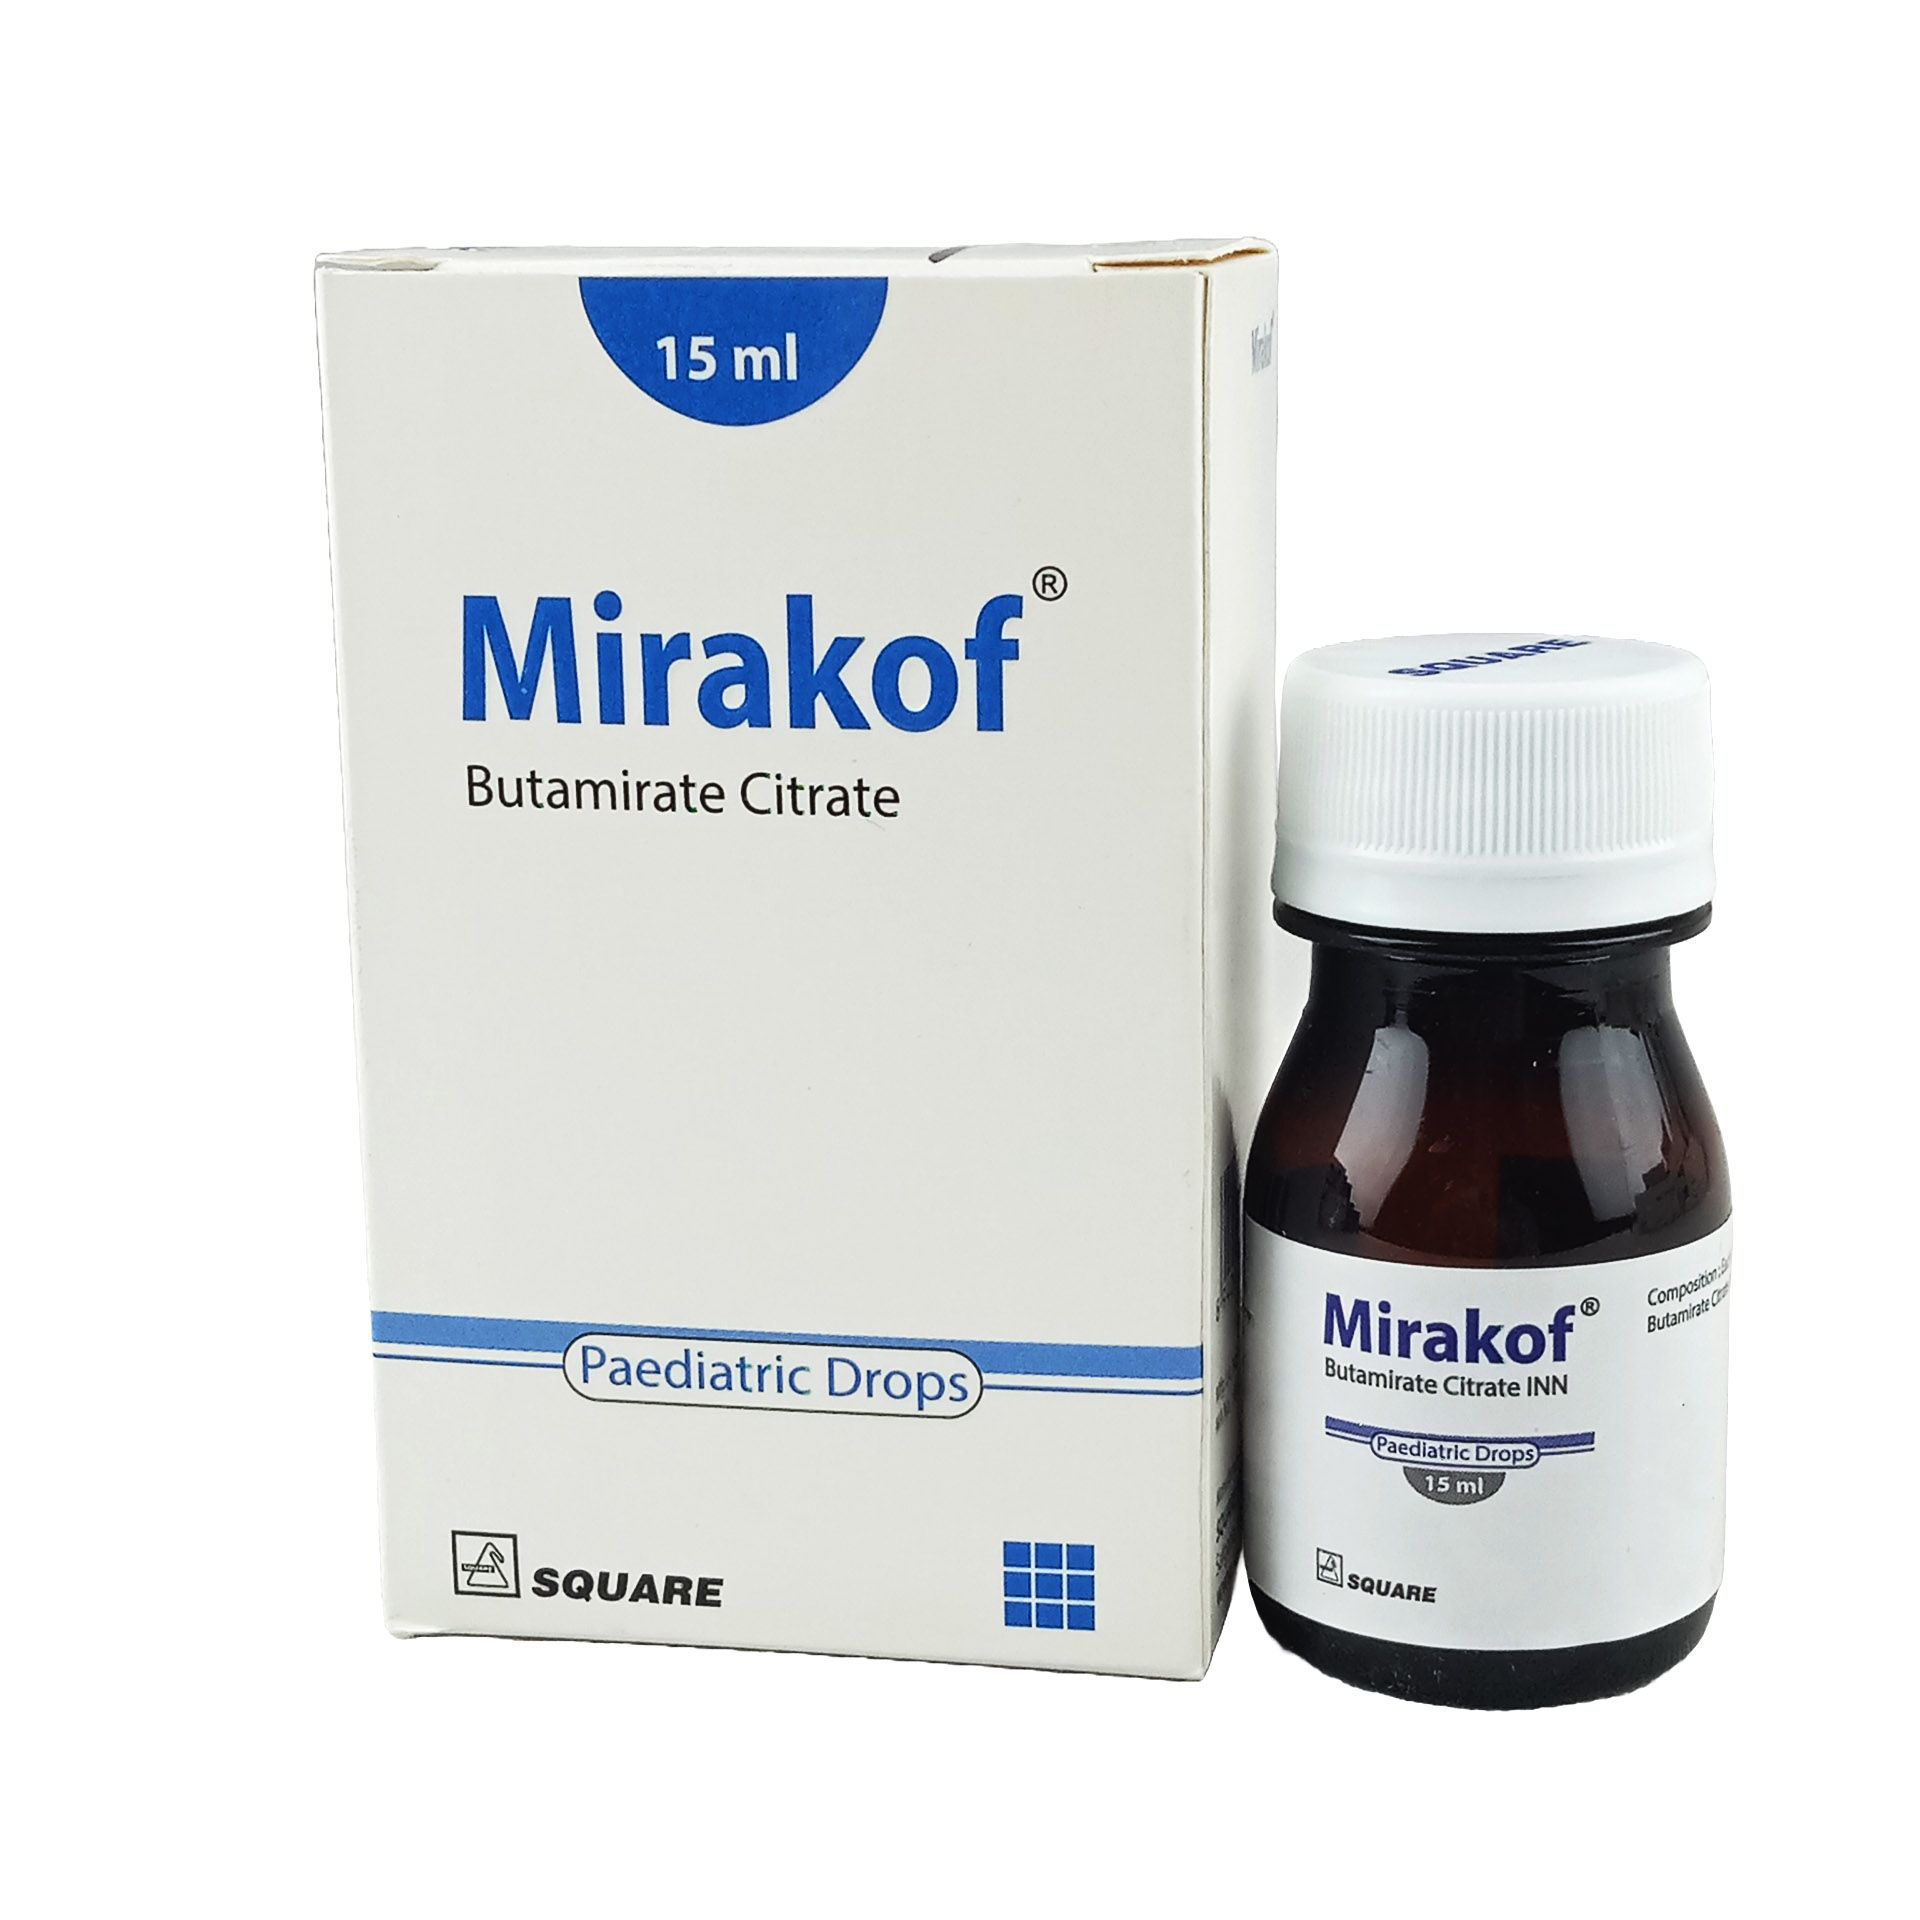 Mirakof Paediatric Drops 5mg/ml Pediatric Drops